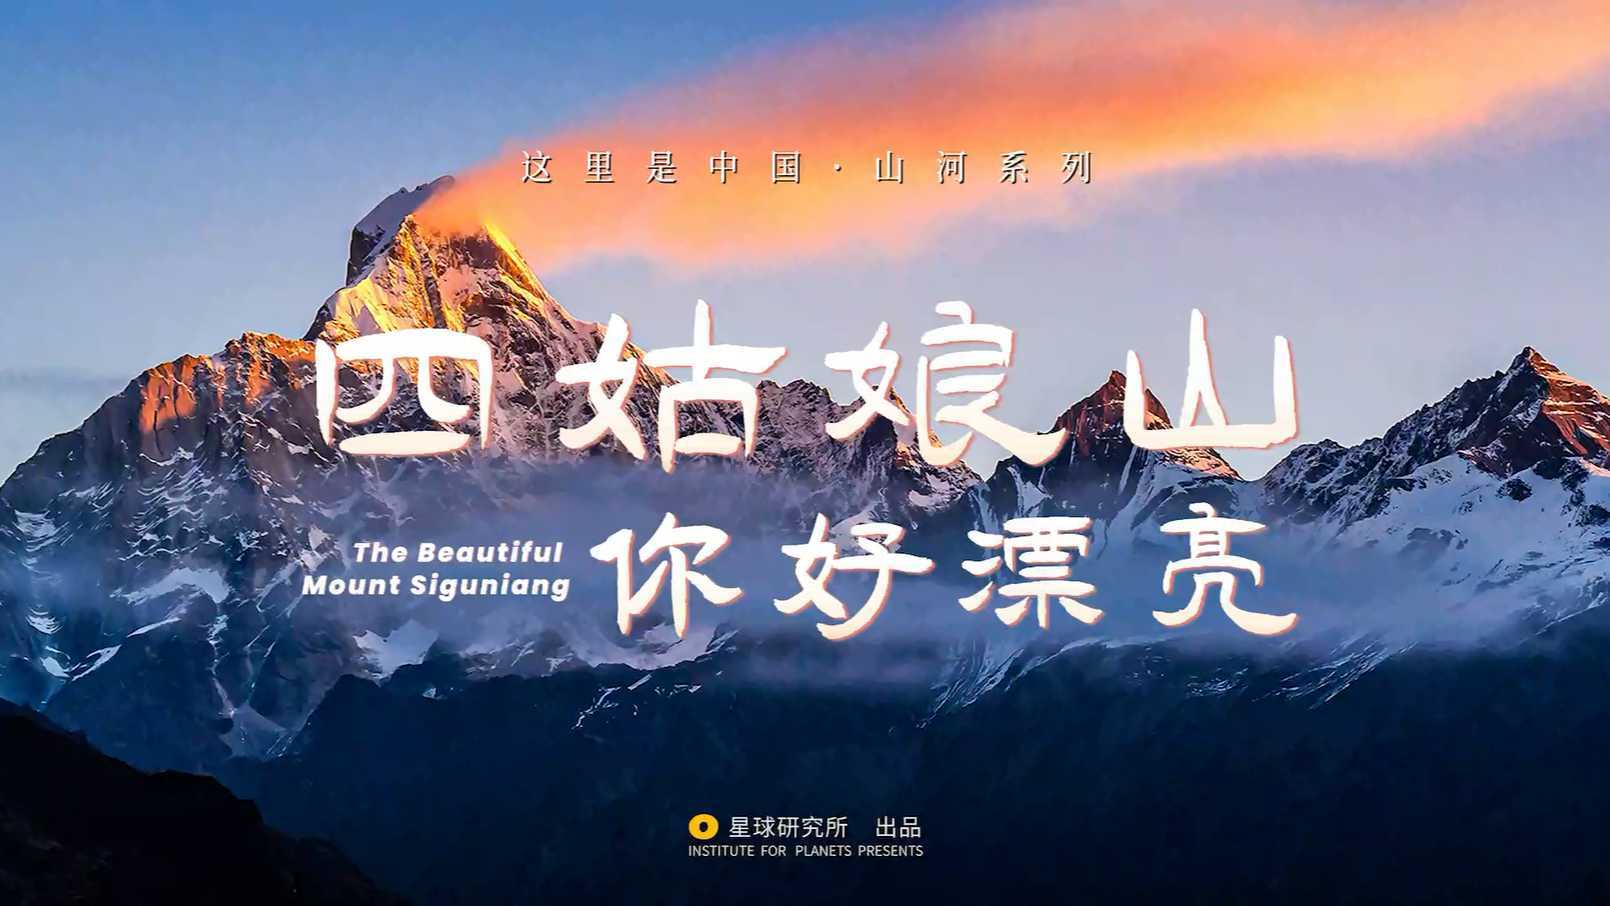 纪录片这里是中国 山河系列 四姑娘山   星球研究所出品  梵曲配音